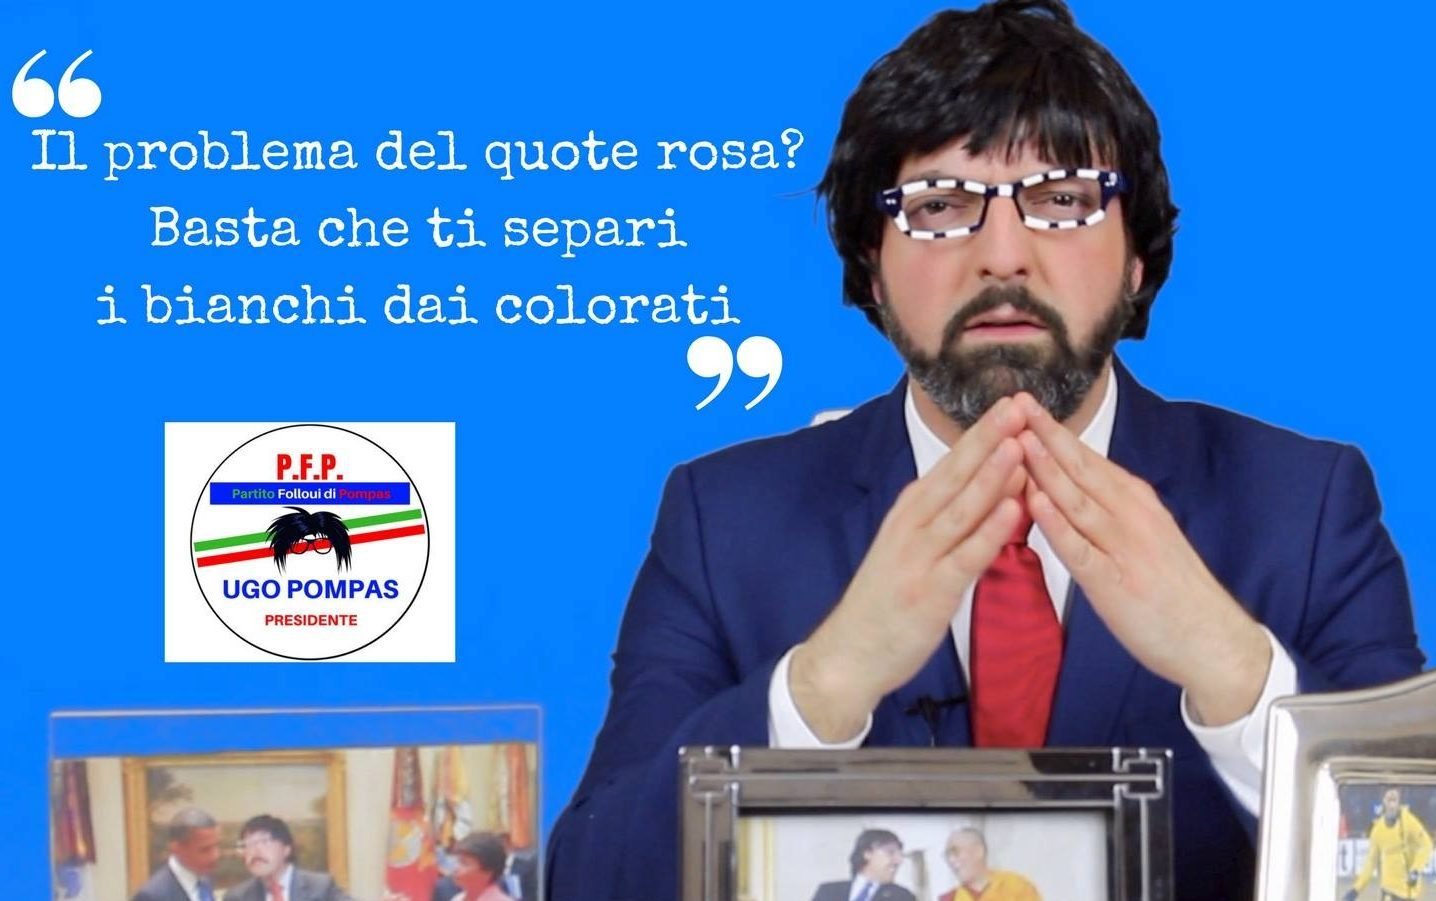 Arriva il politico che parla alla pancia de “gli taliani”: Ugo Pompas